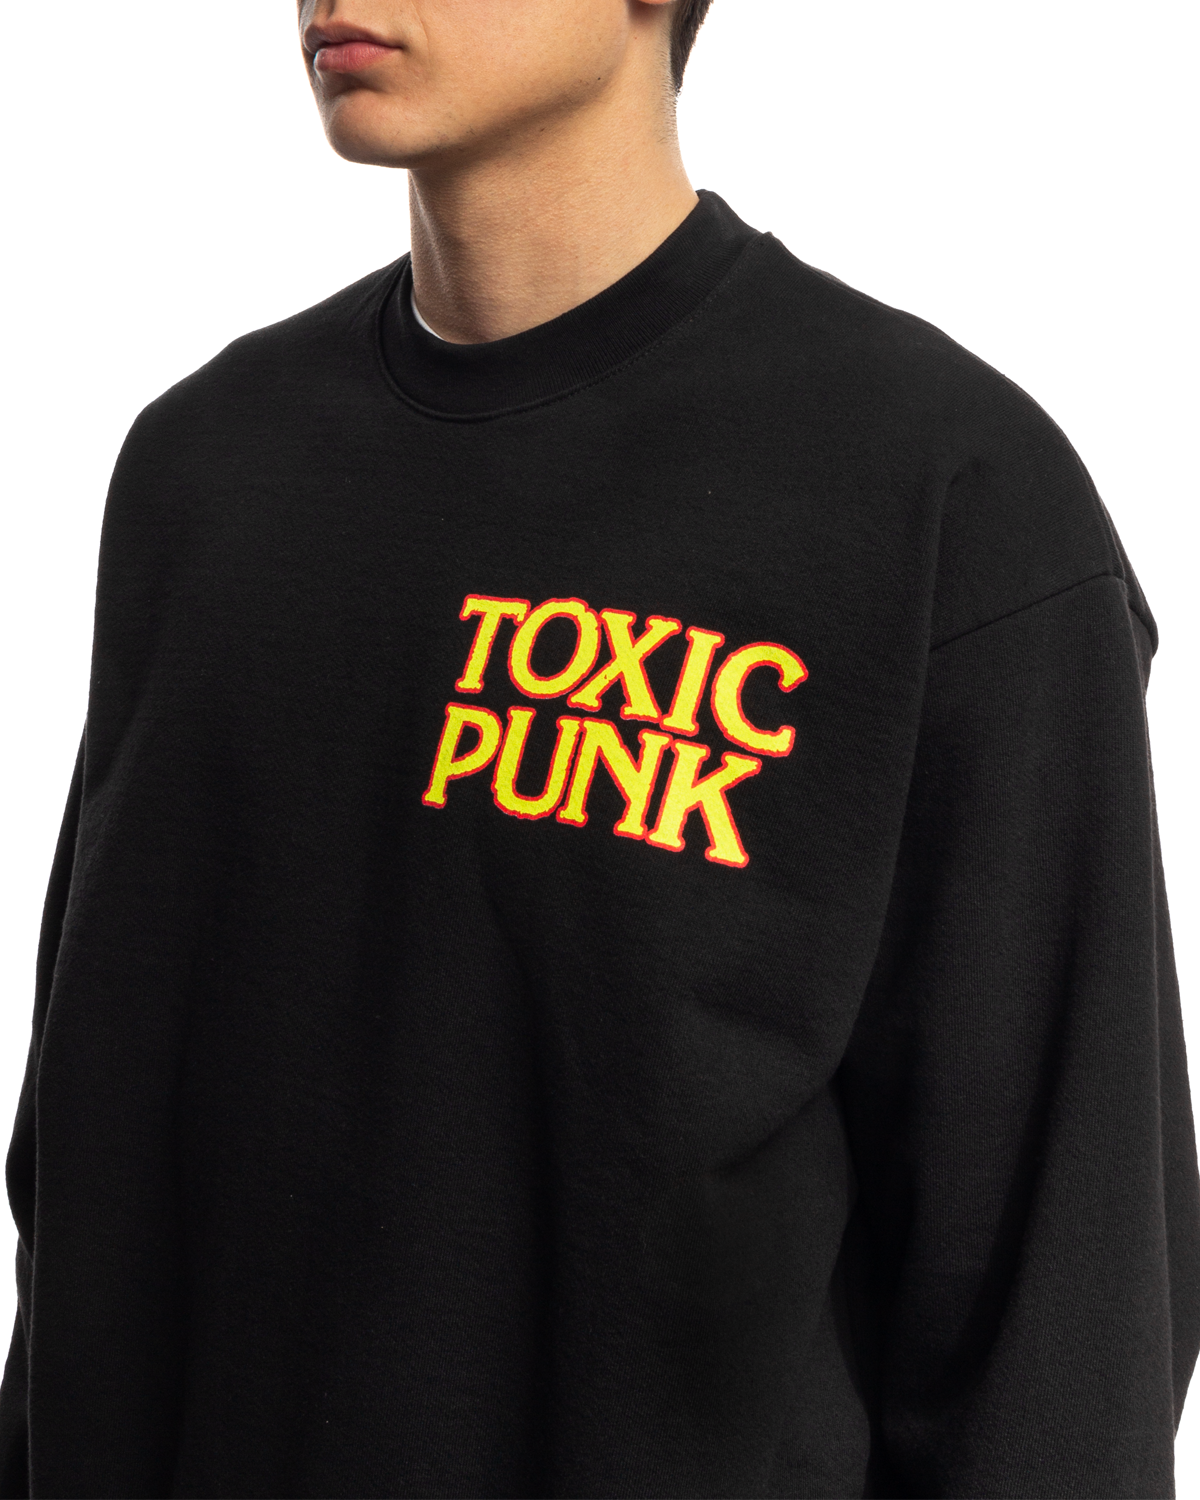 Toxic Punk Crewneck Black